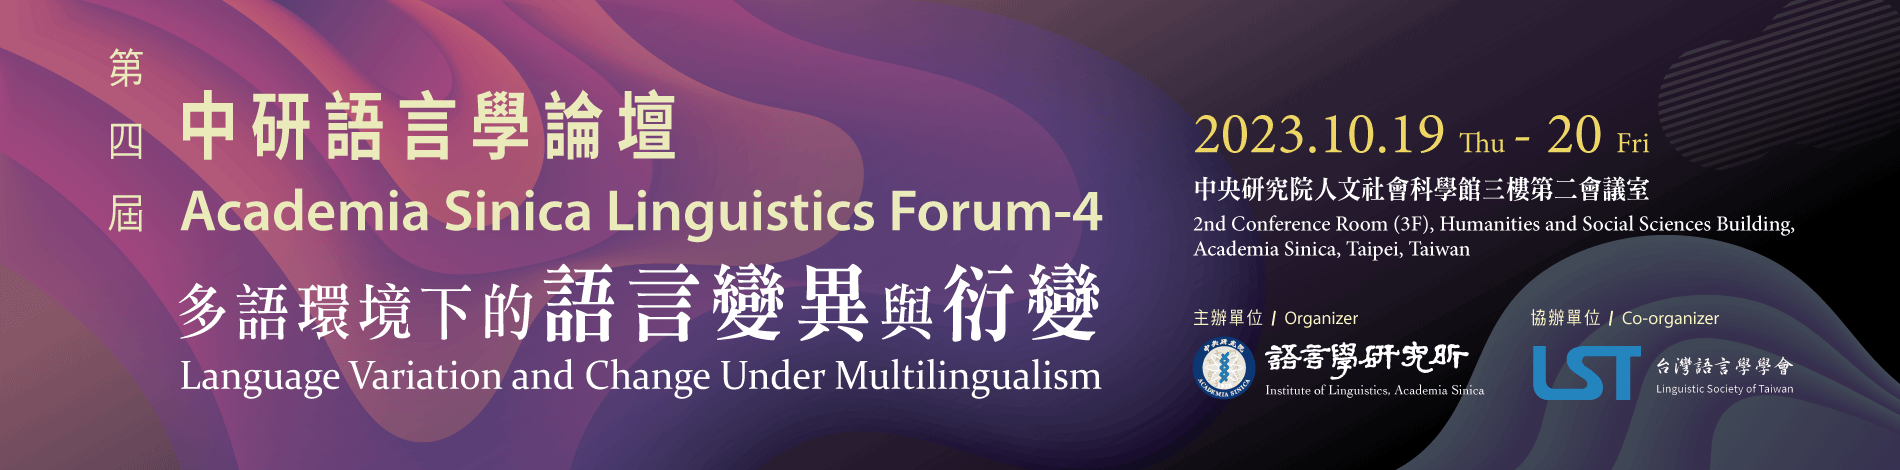 Academia Sinica Linguistics Forum-4